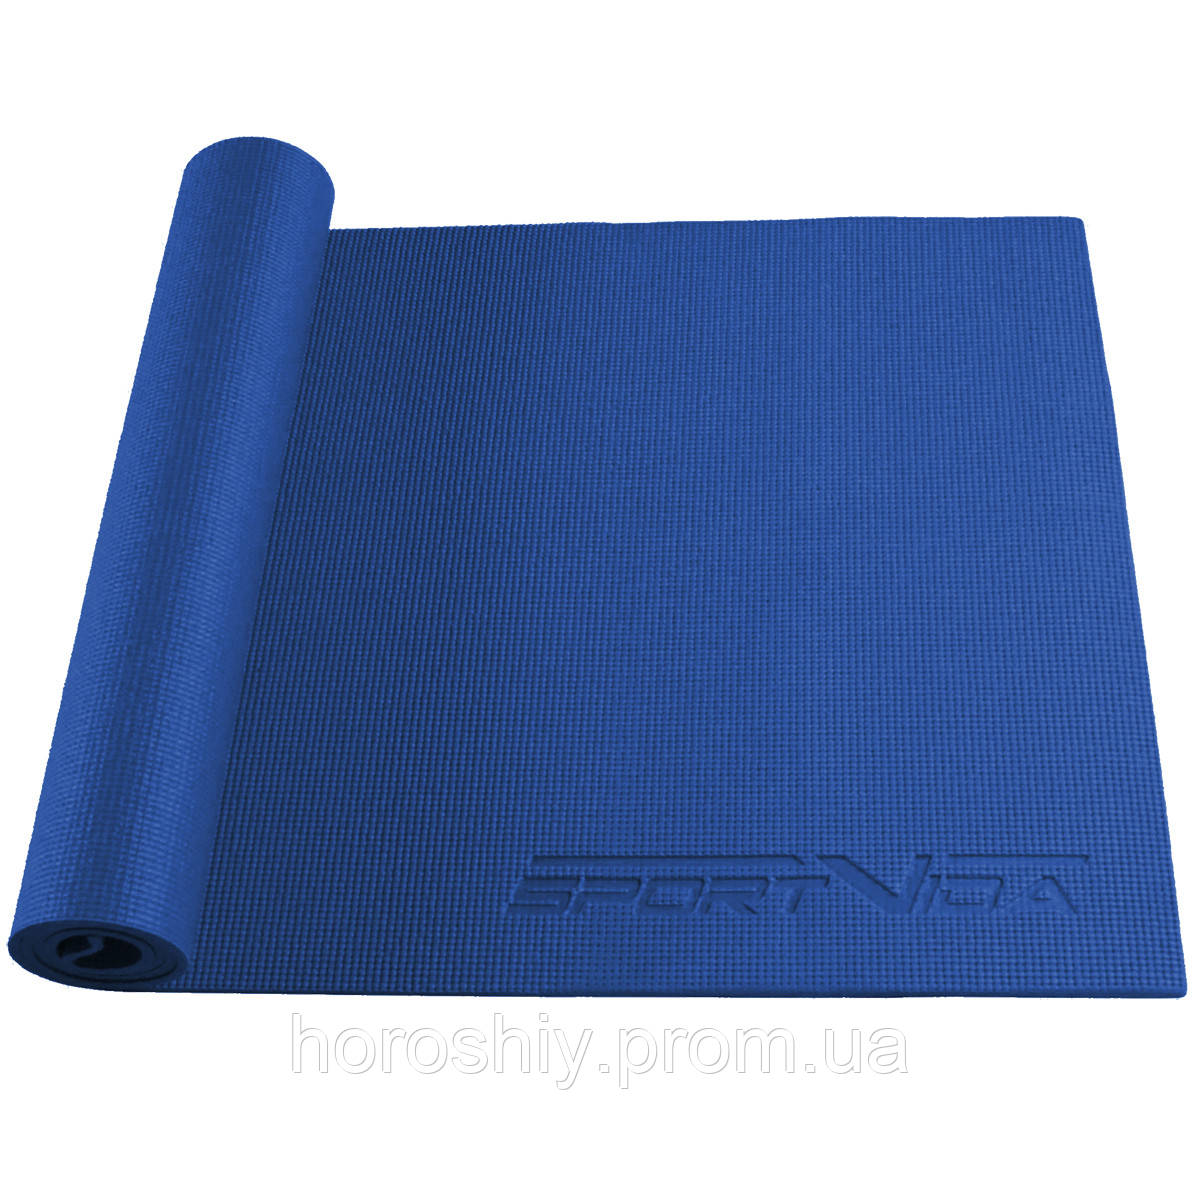 Килимок каремат для йоги та фітнесу 6 мм Синій SportVida